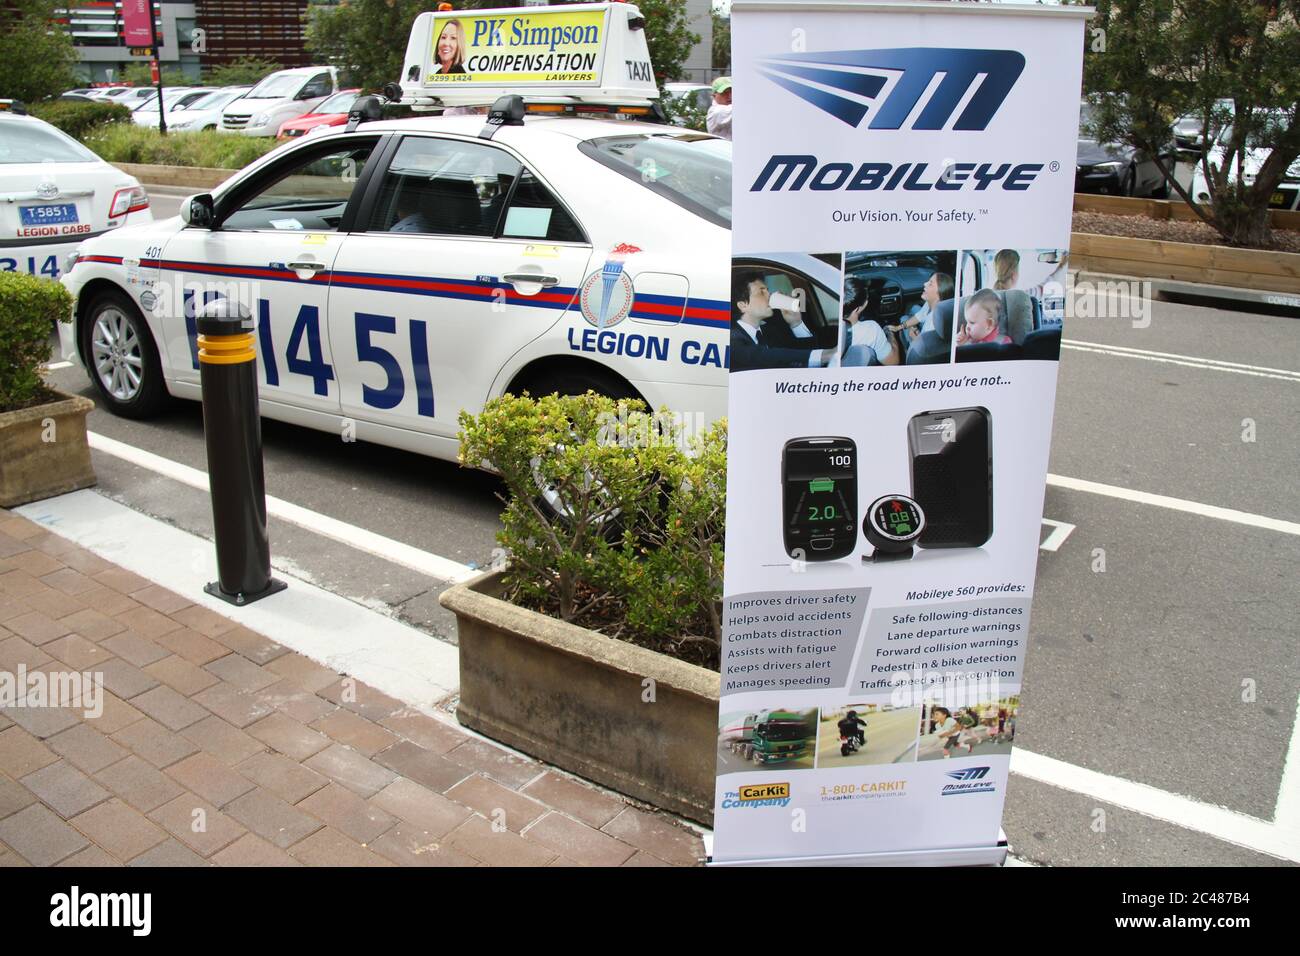 La premiata tecnologia Mobileye sarà tritata a Sydney da metà gennaio al 31 marzo 2014 con un massimo di 20 taxi Legion Cabs. Foto Stock